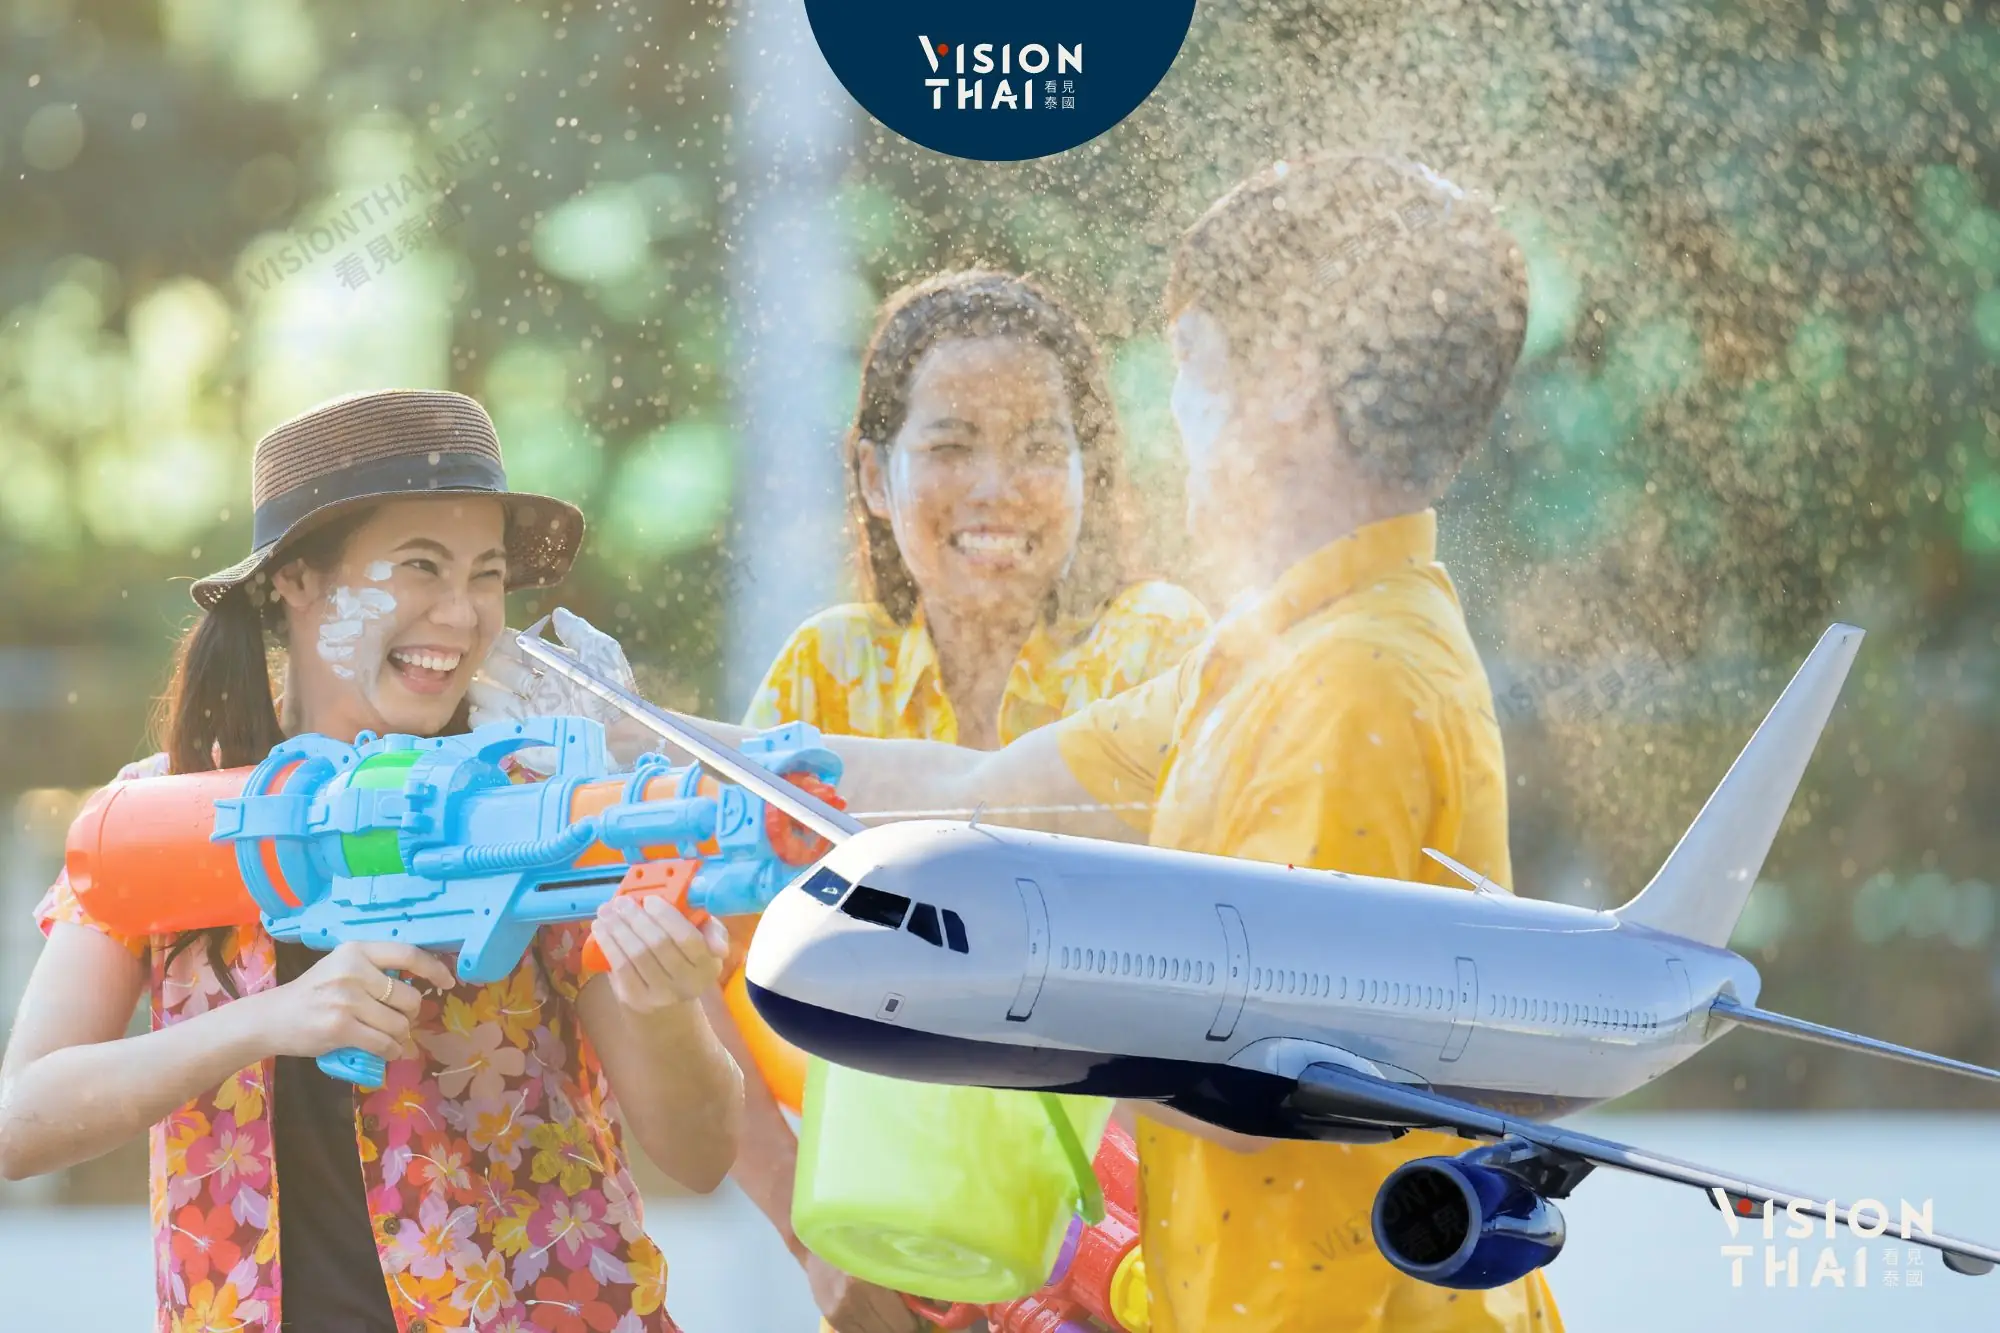 刺激泰國潑水節旅遊 增加航班、紅眼8折優惠（來源：看見泰國 Vision Thai）